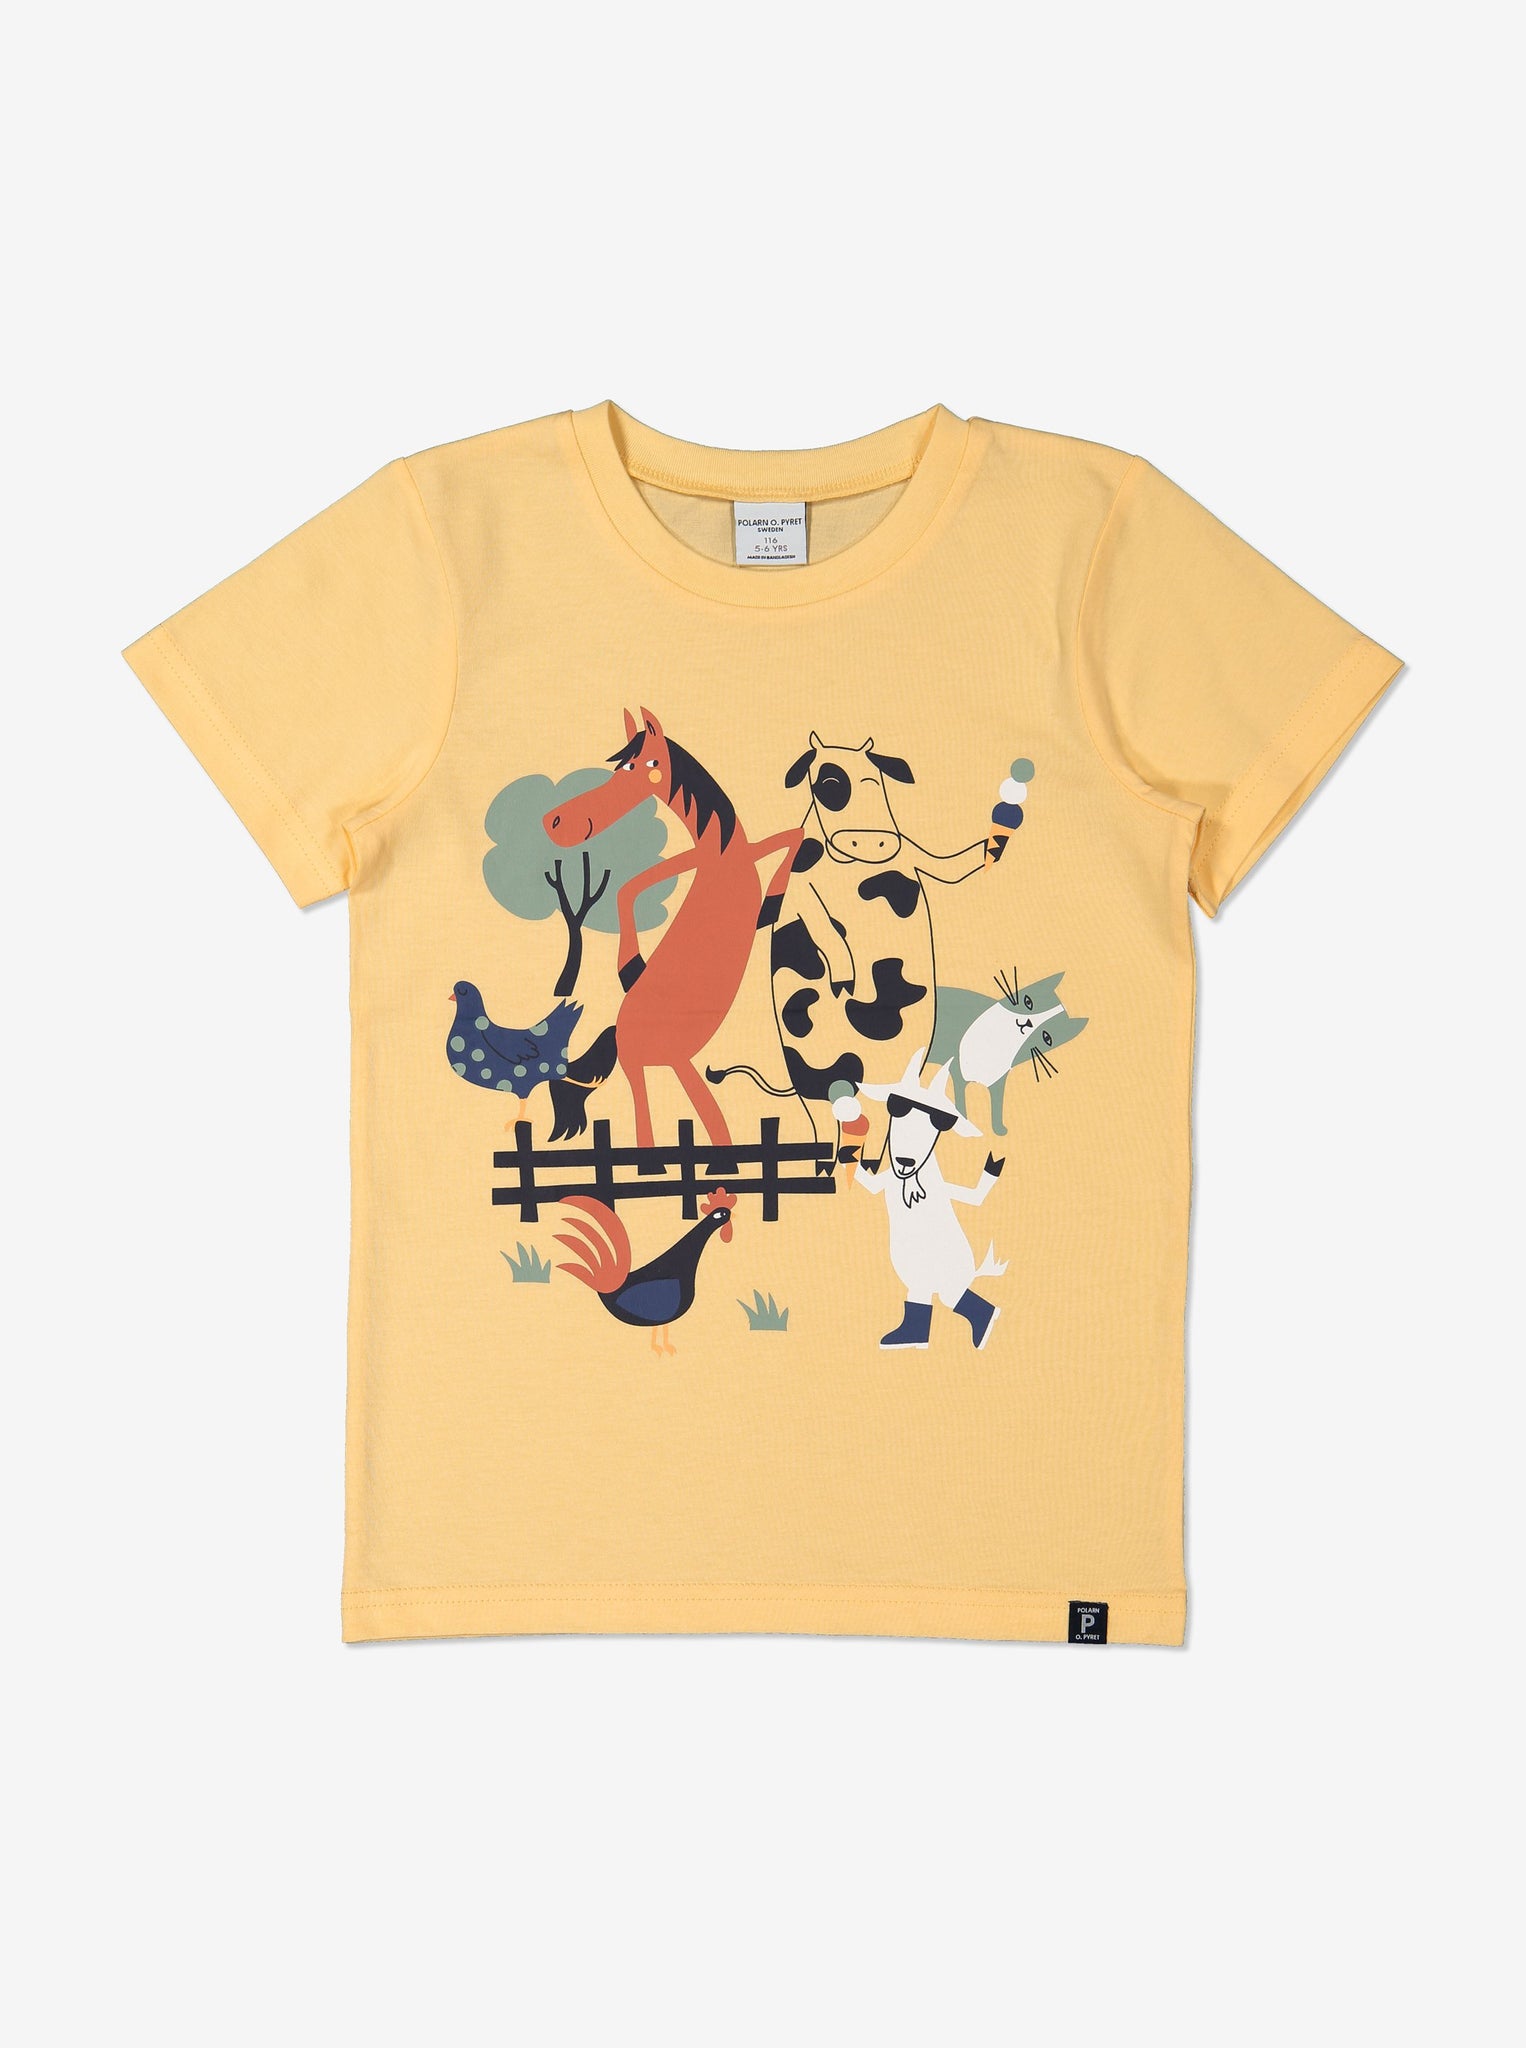 Unisex Yellow Kids Organic T-Shirt